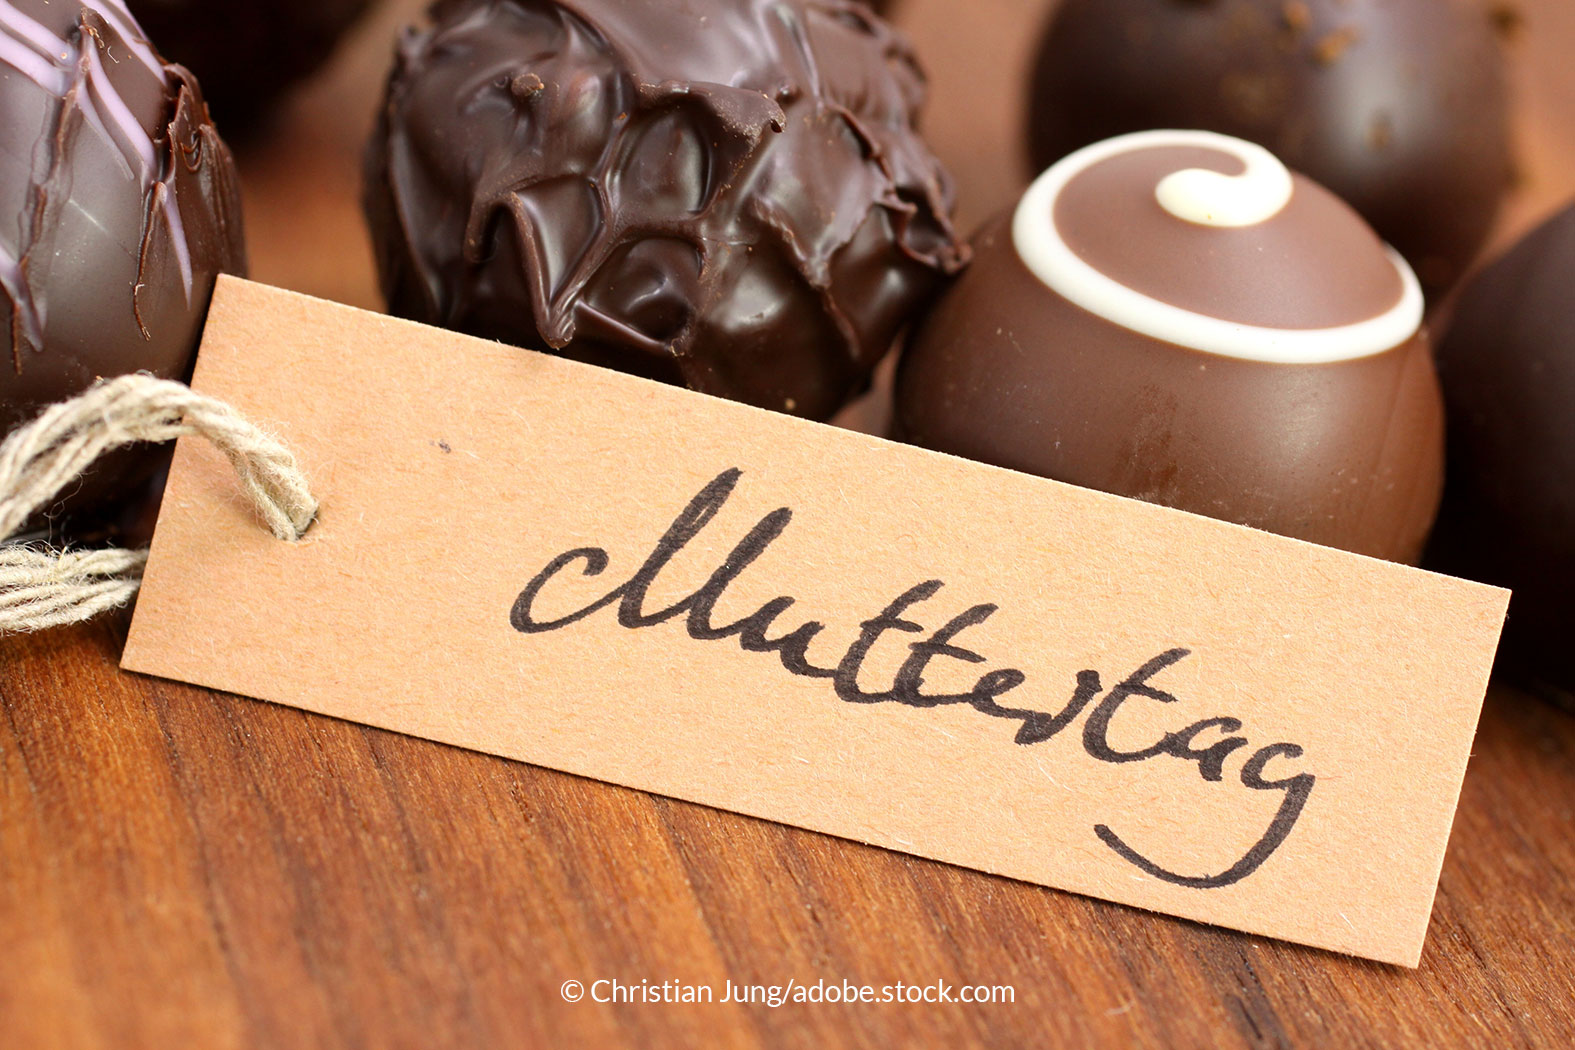 Genuss schokolade - Unsere Favoriten unter den analysierten Genuss schokolade!